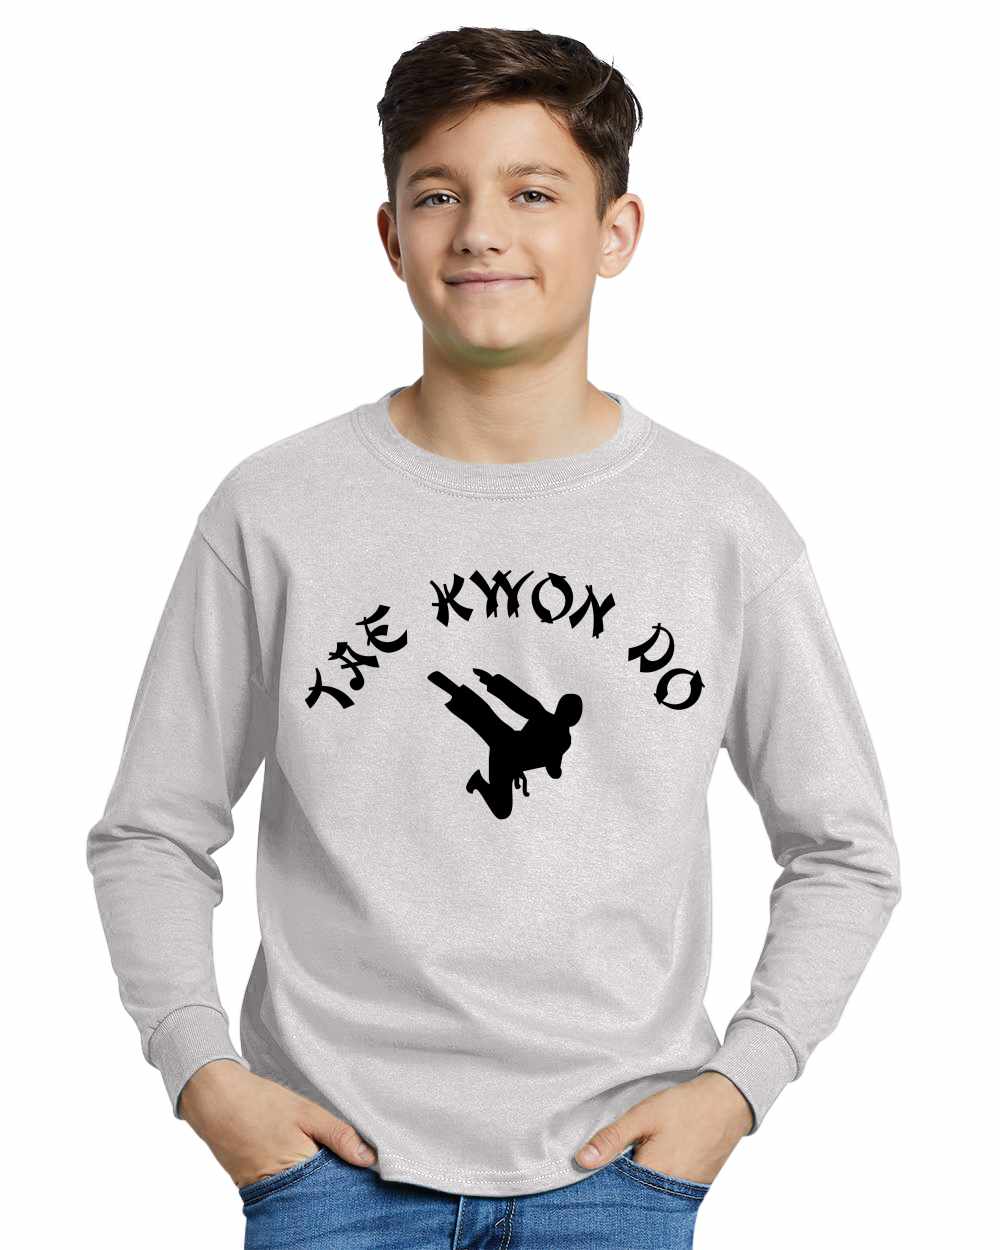 TAE KWON DO on Youth Long Sleeve Shirt